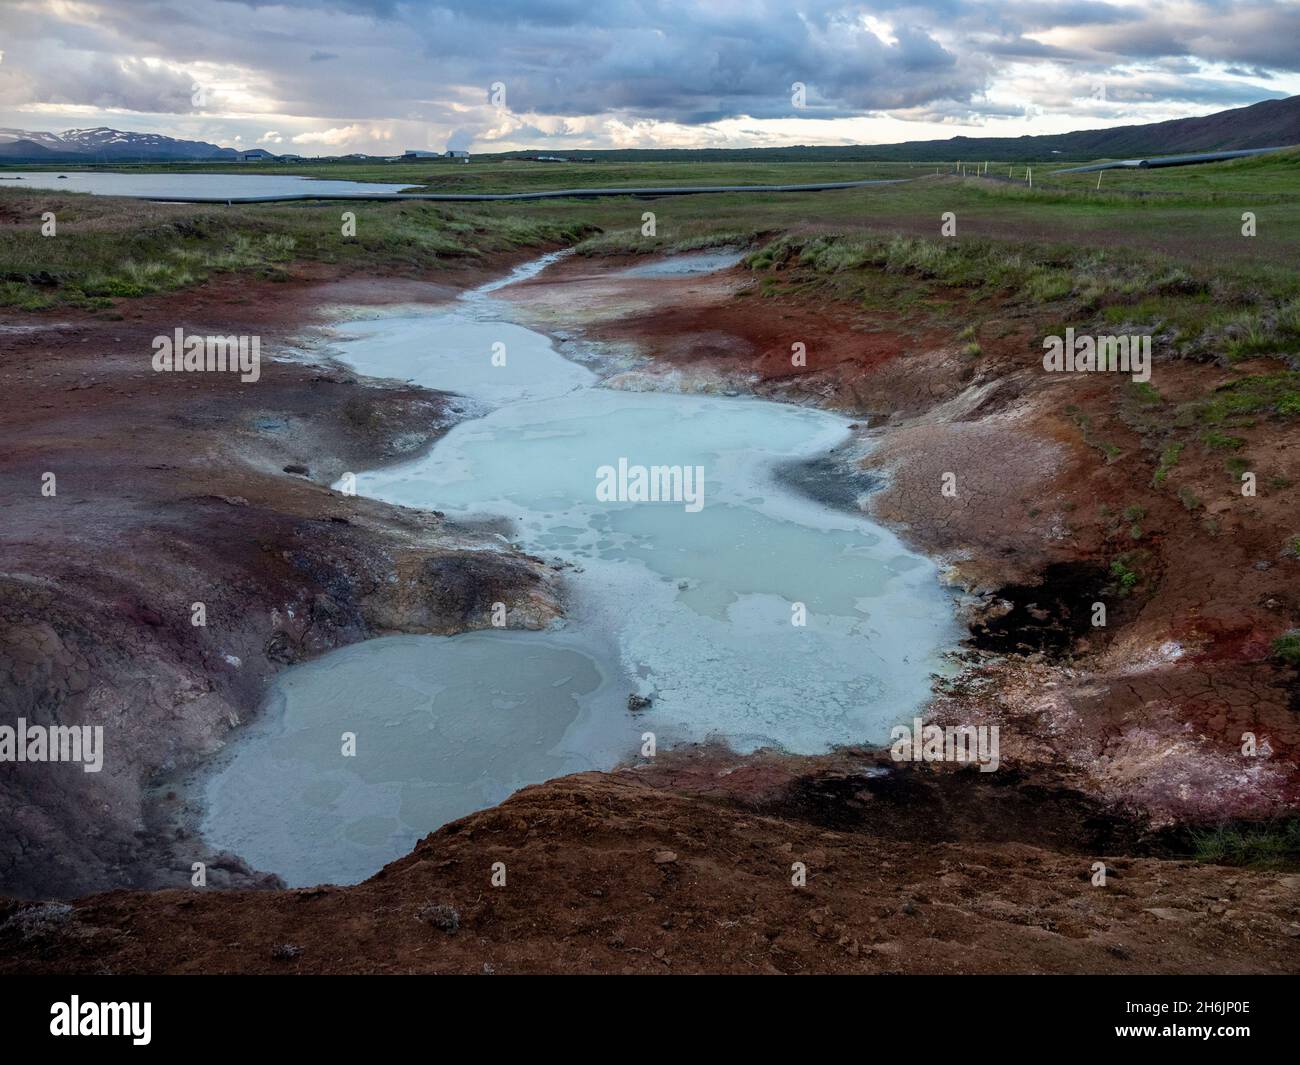 Potes de barro geotérmicos situados justo a las afueras de la ciudad de Husvik en la costa norte de Islandia, en las regiones polares Foto de stock